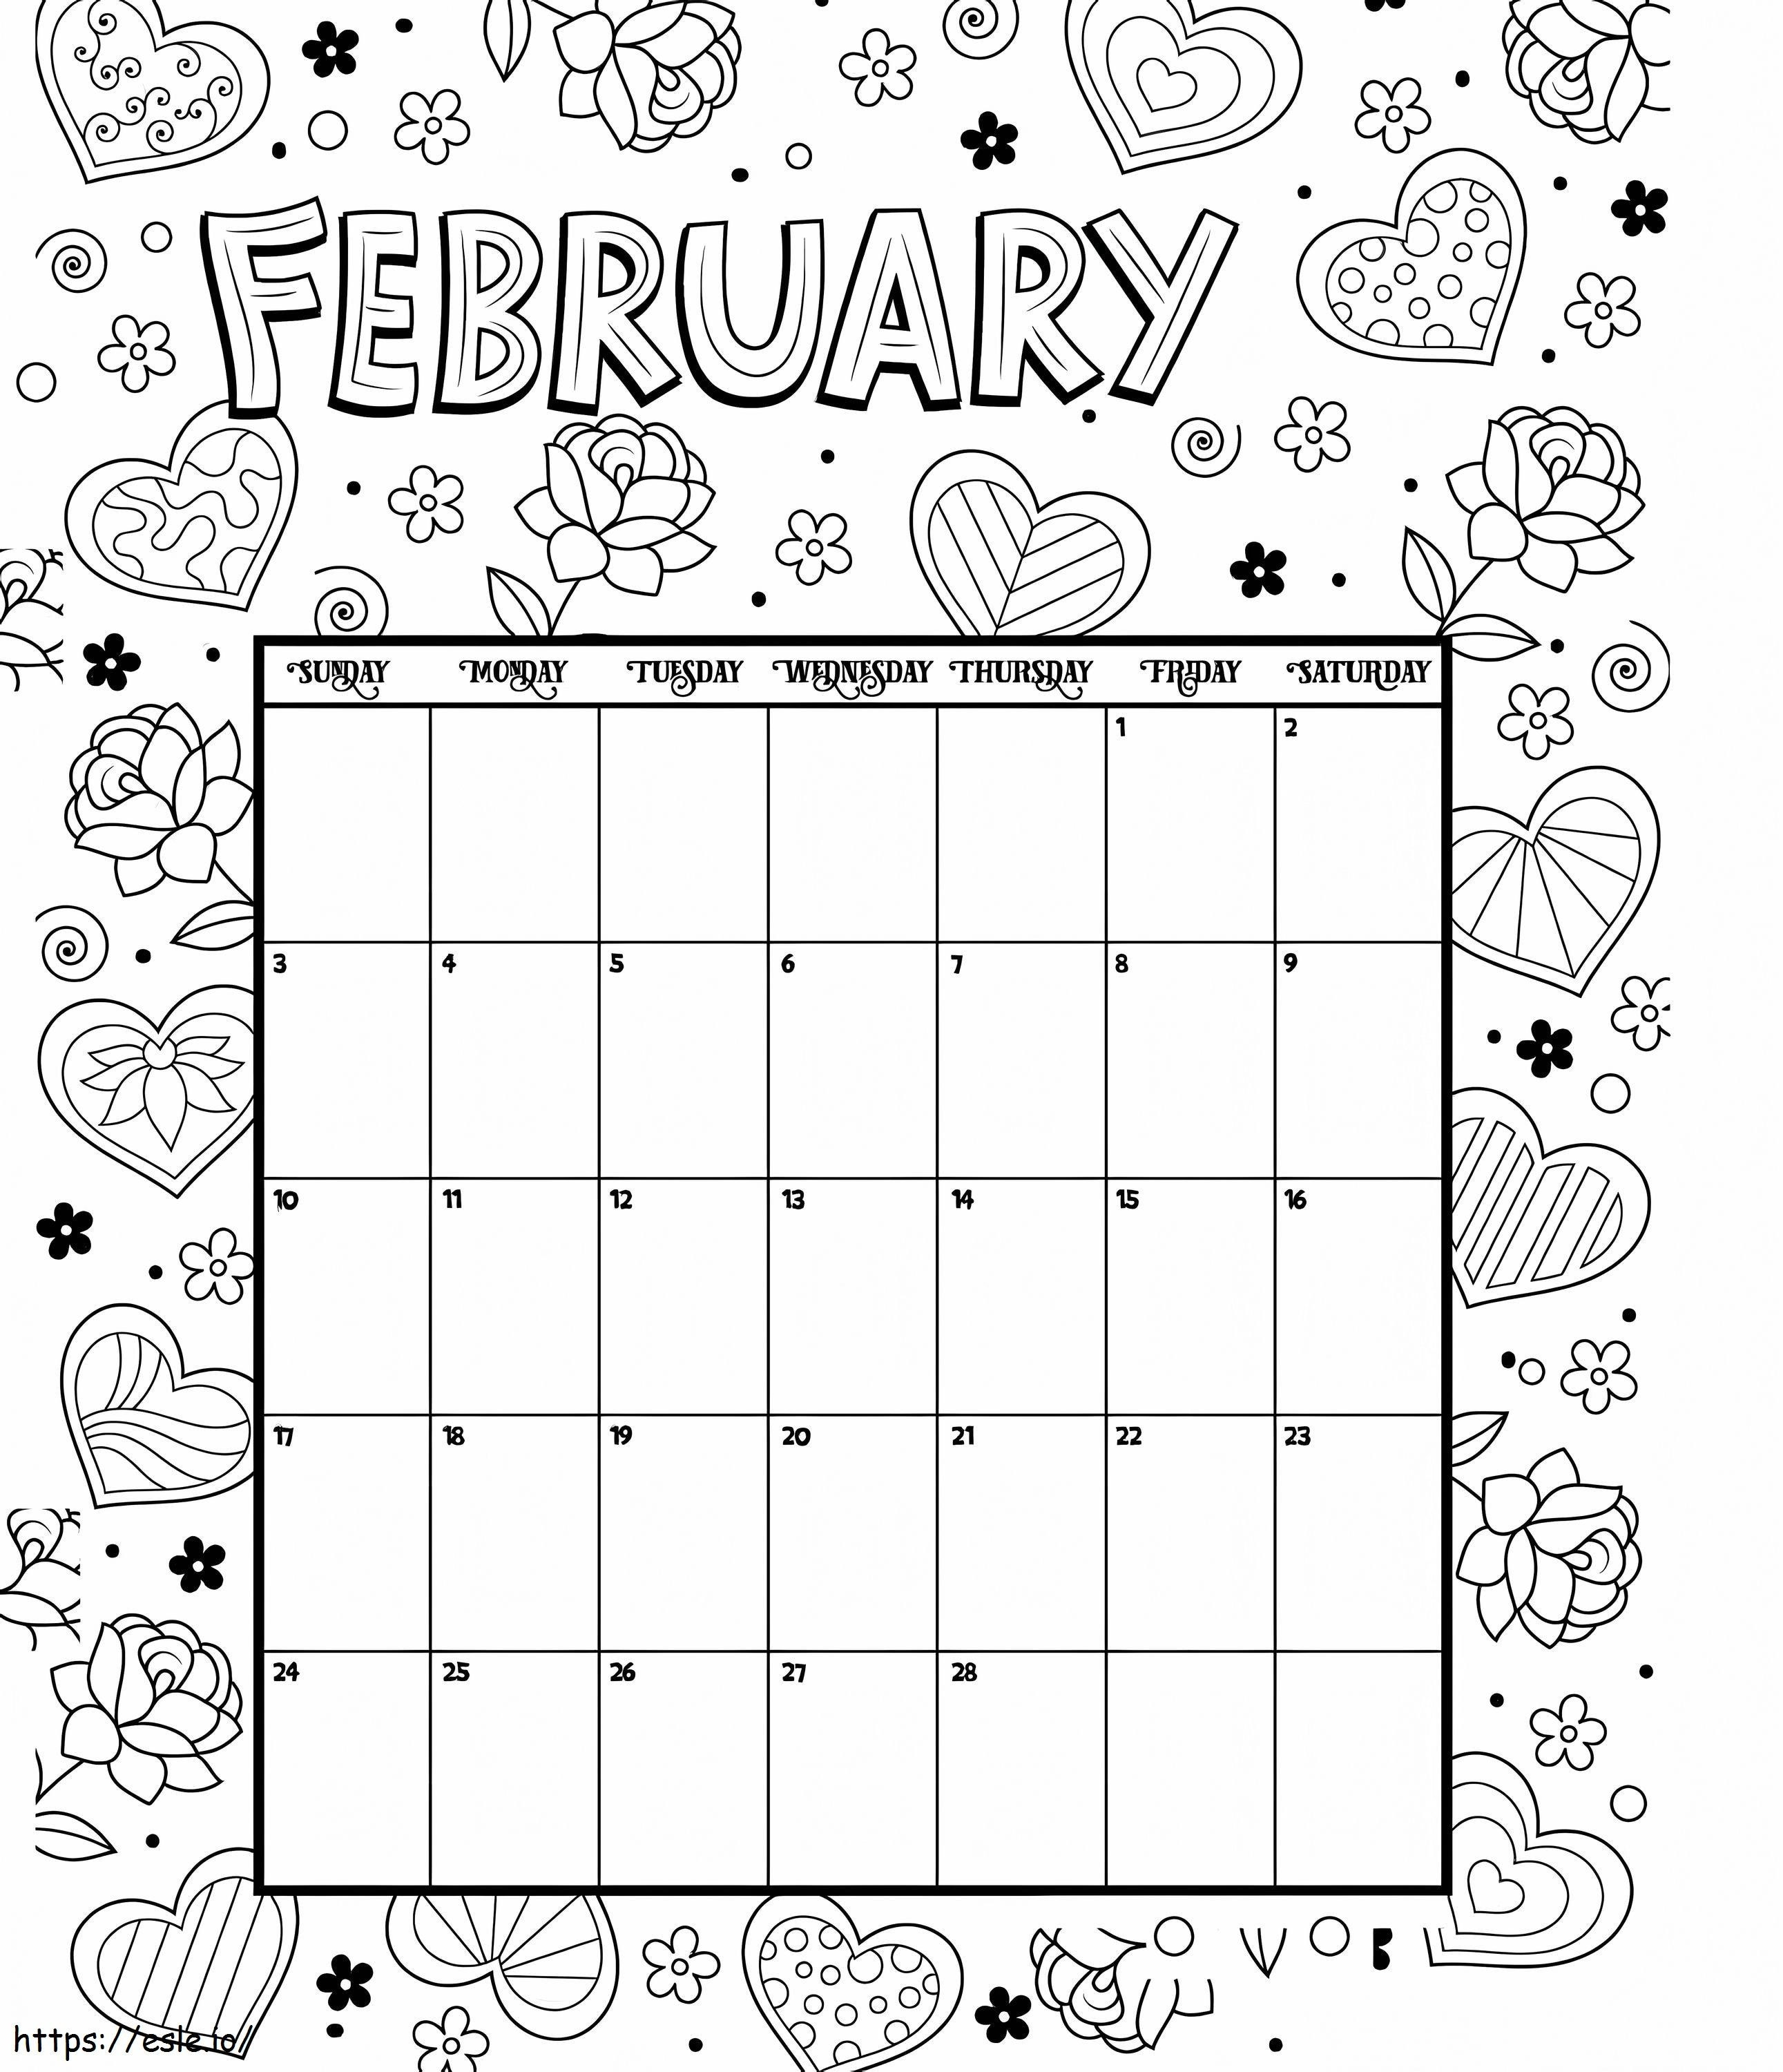 Calendario de febrero para colorear